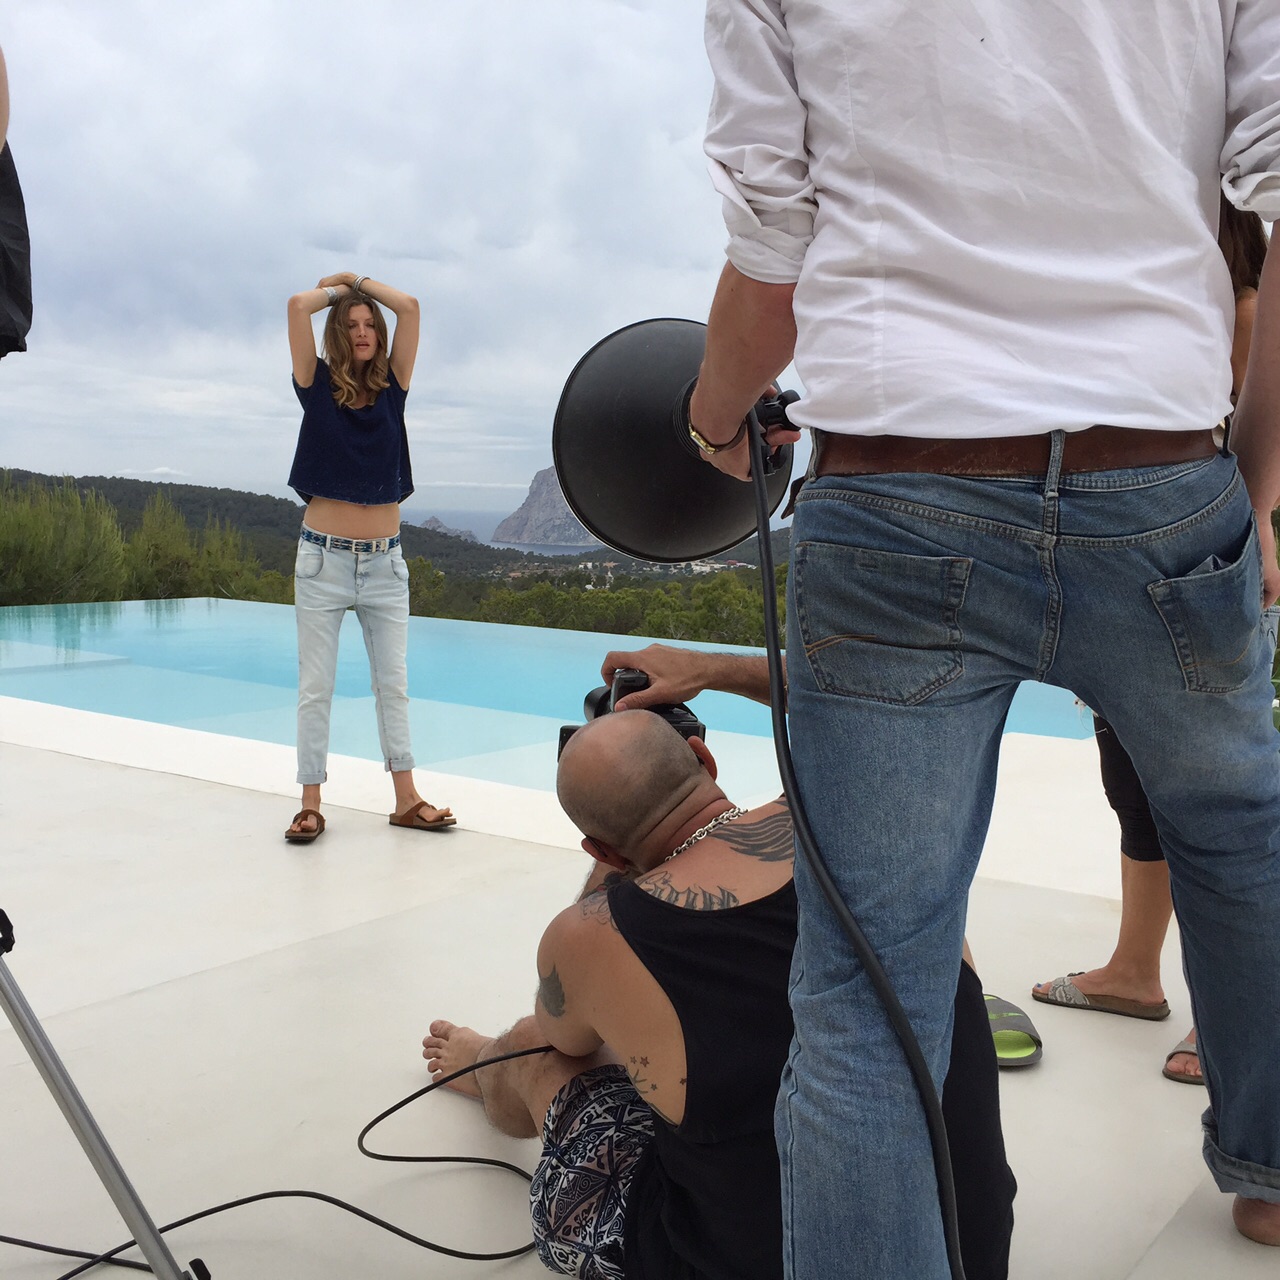 Fotograf und Model am Pool